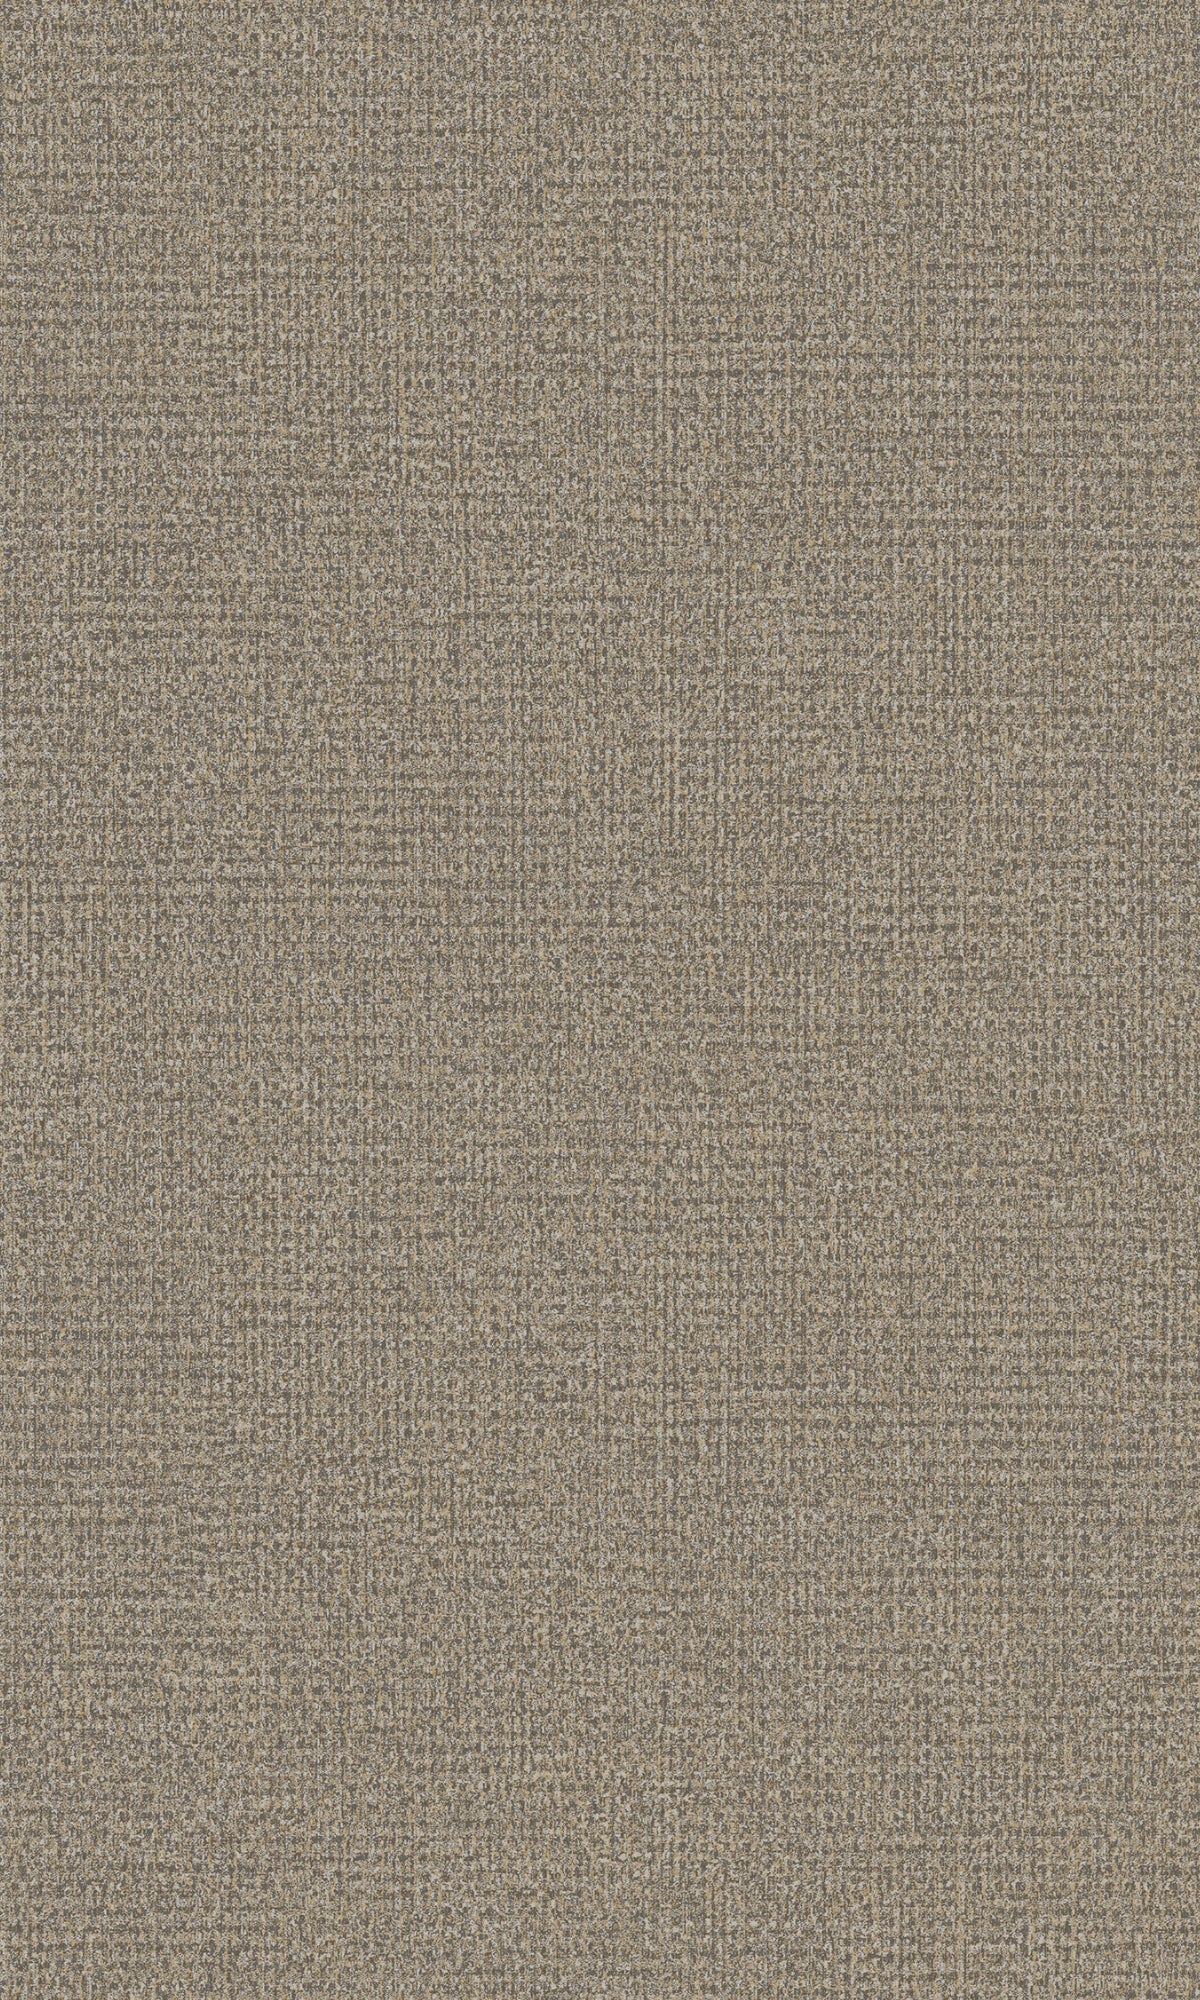 Walnut Plain Fabric Like Textured Wallpaper R8167